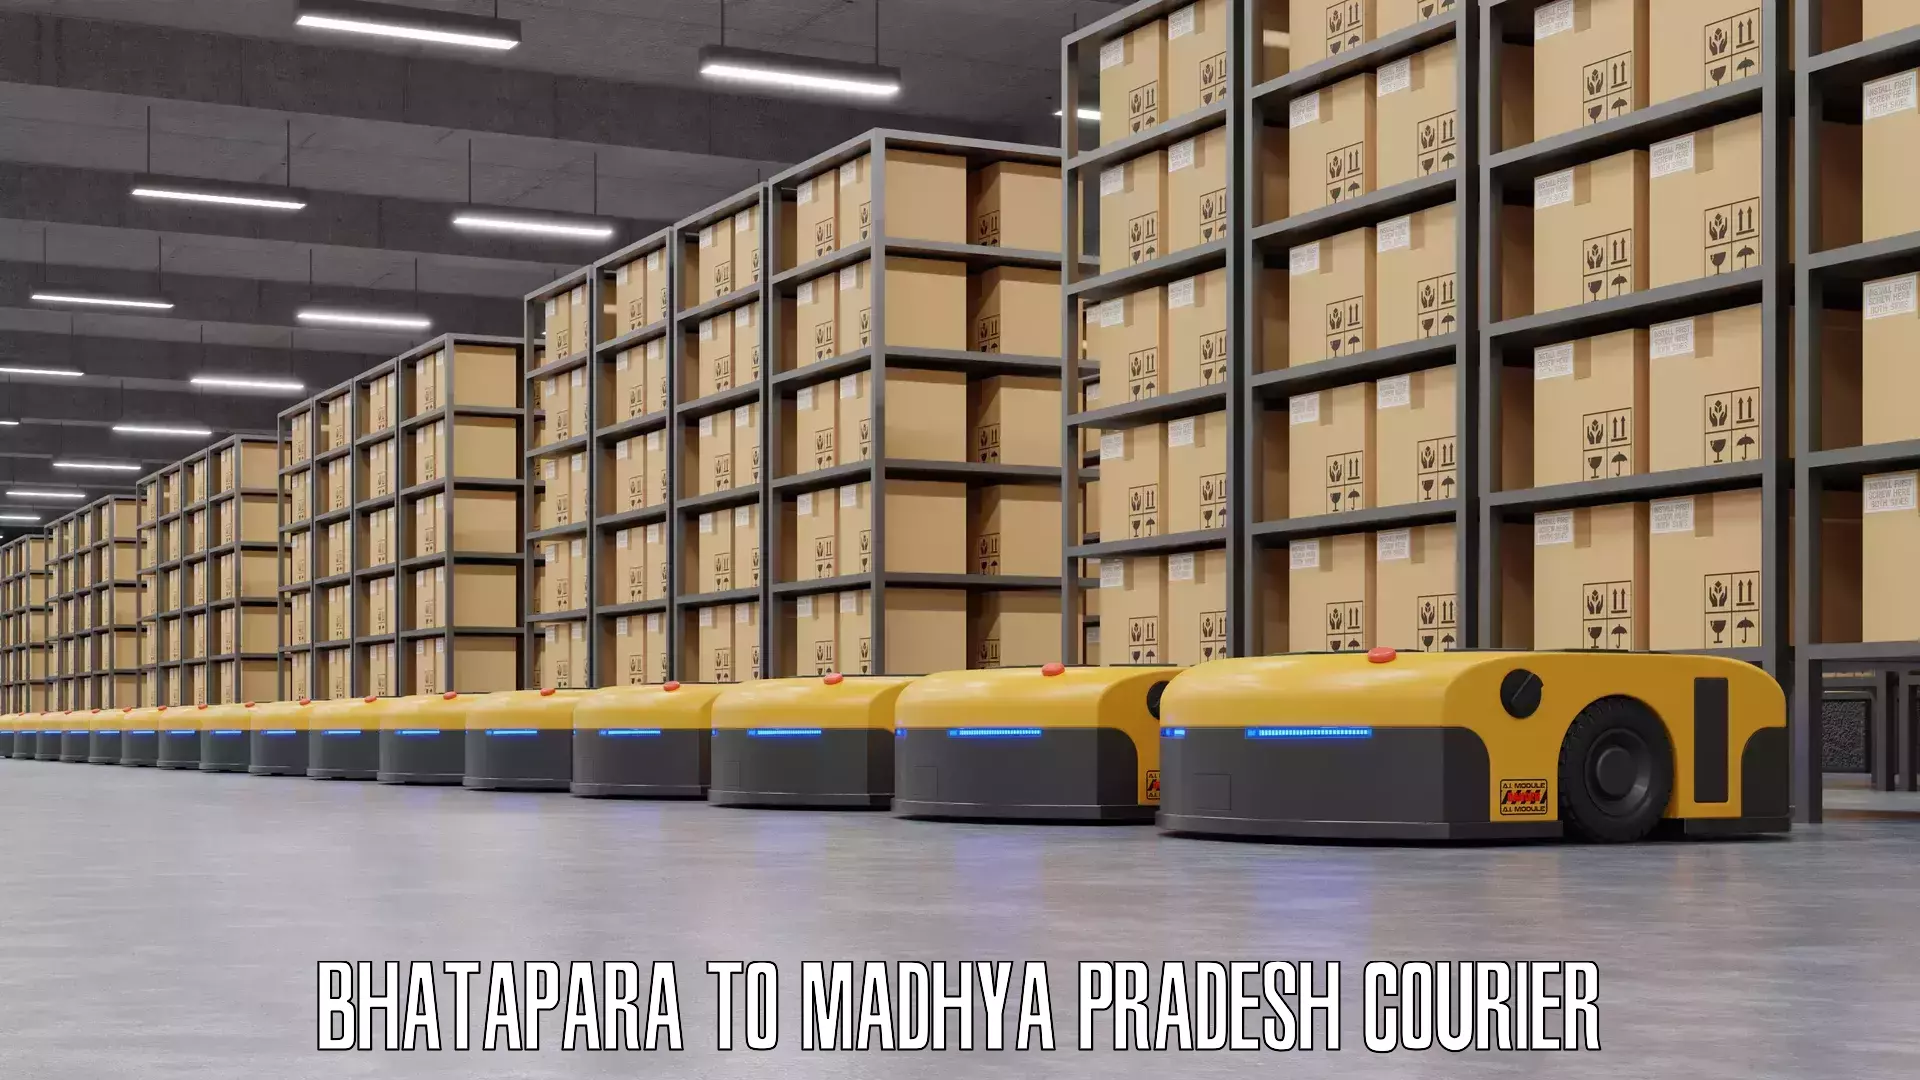 Personal effects shipping Bhatapara to Madhya Pradesh